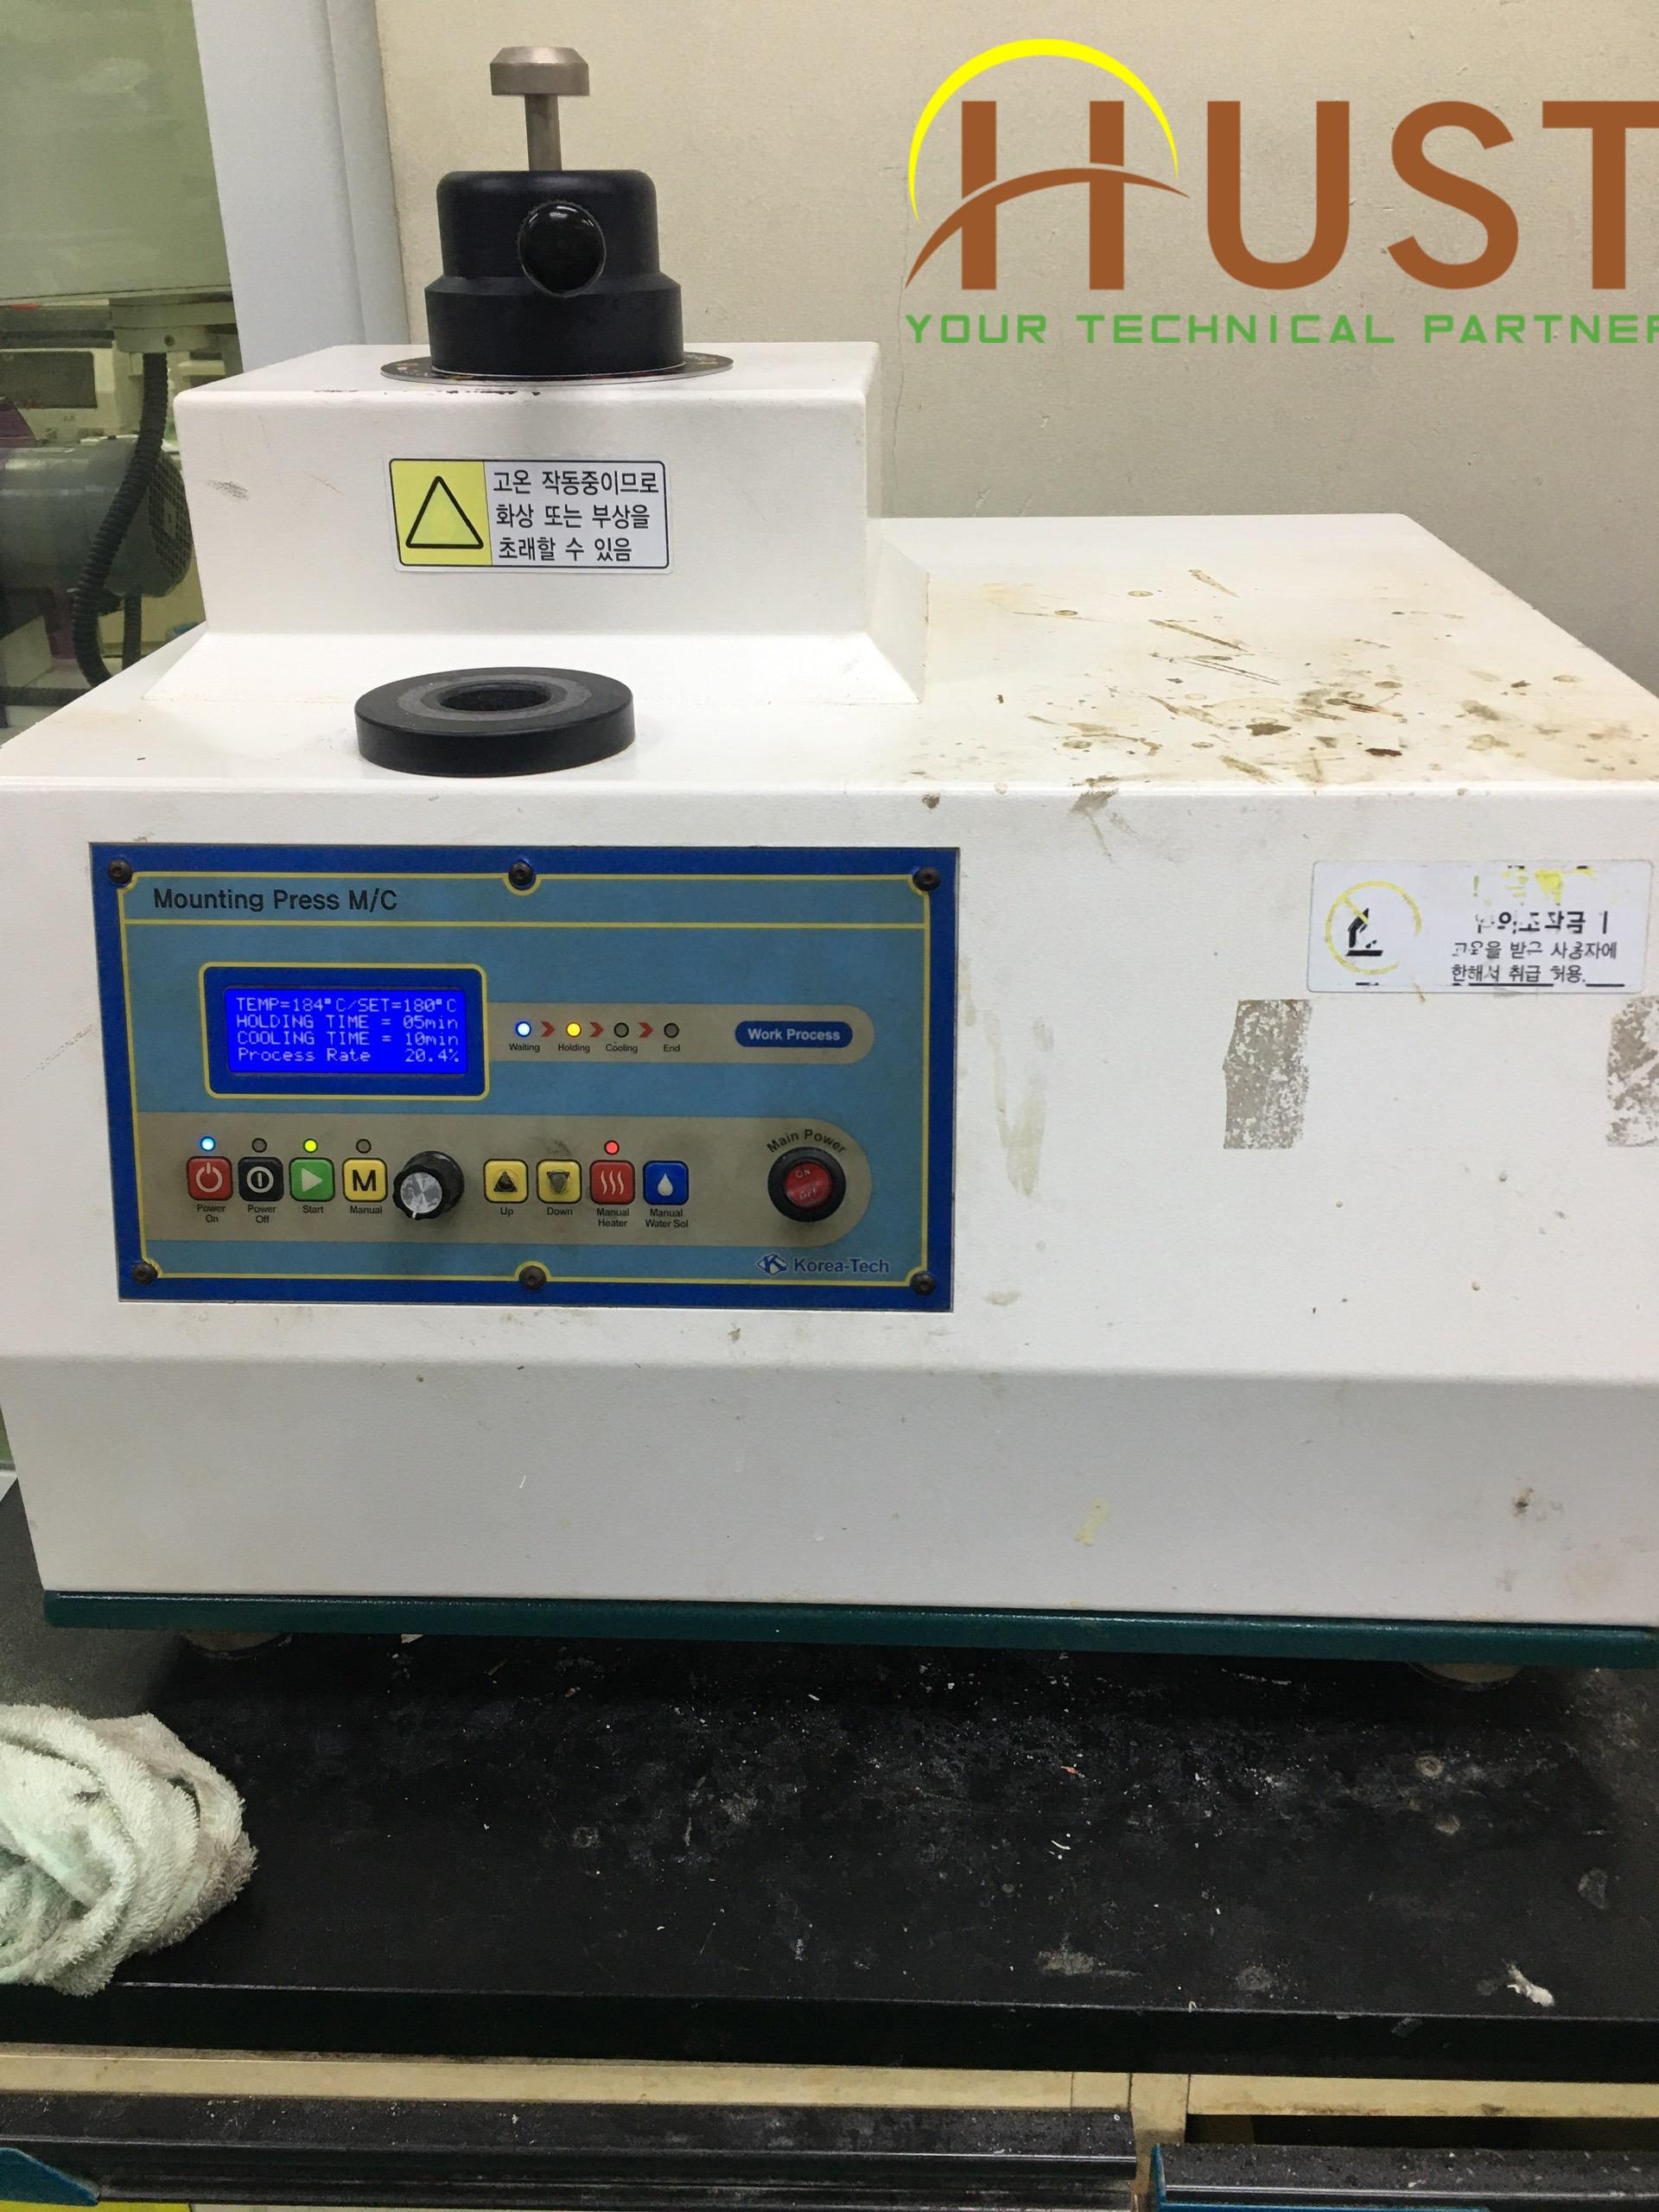 Sửa chữa máy đúc mẫu nóng (Mounting Press ) cho khách hàng tại KCN Nhơn Trạch Đồng Nai